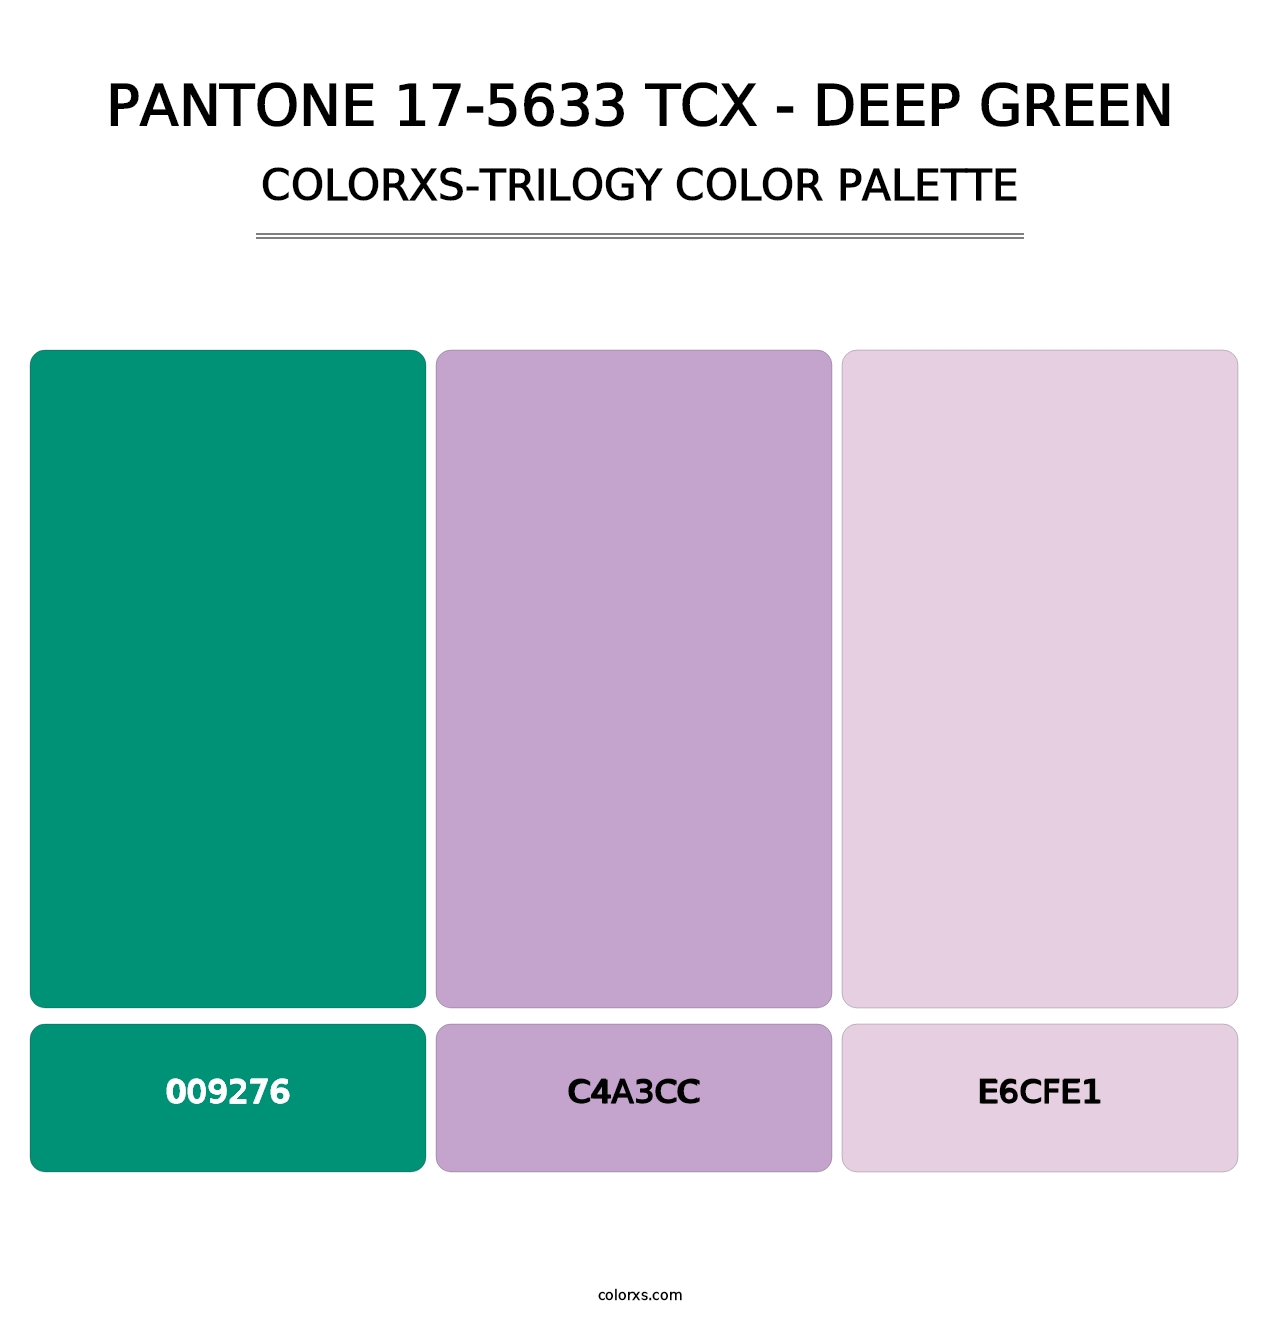 PANTONE 17-5633 TCX - Deep Green - Colorxs Trilogy Palette